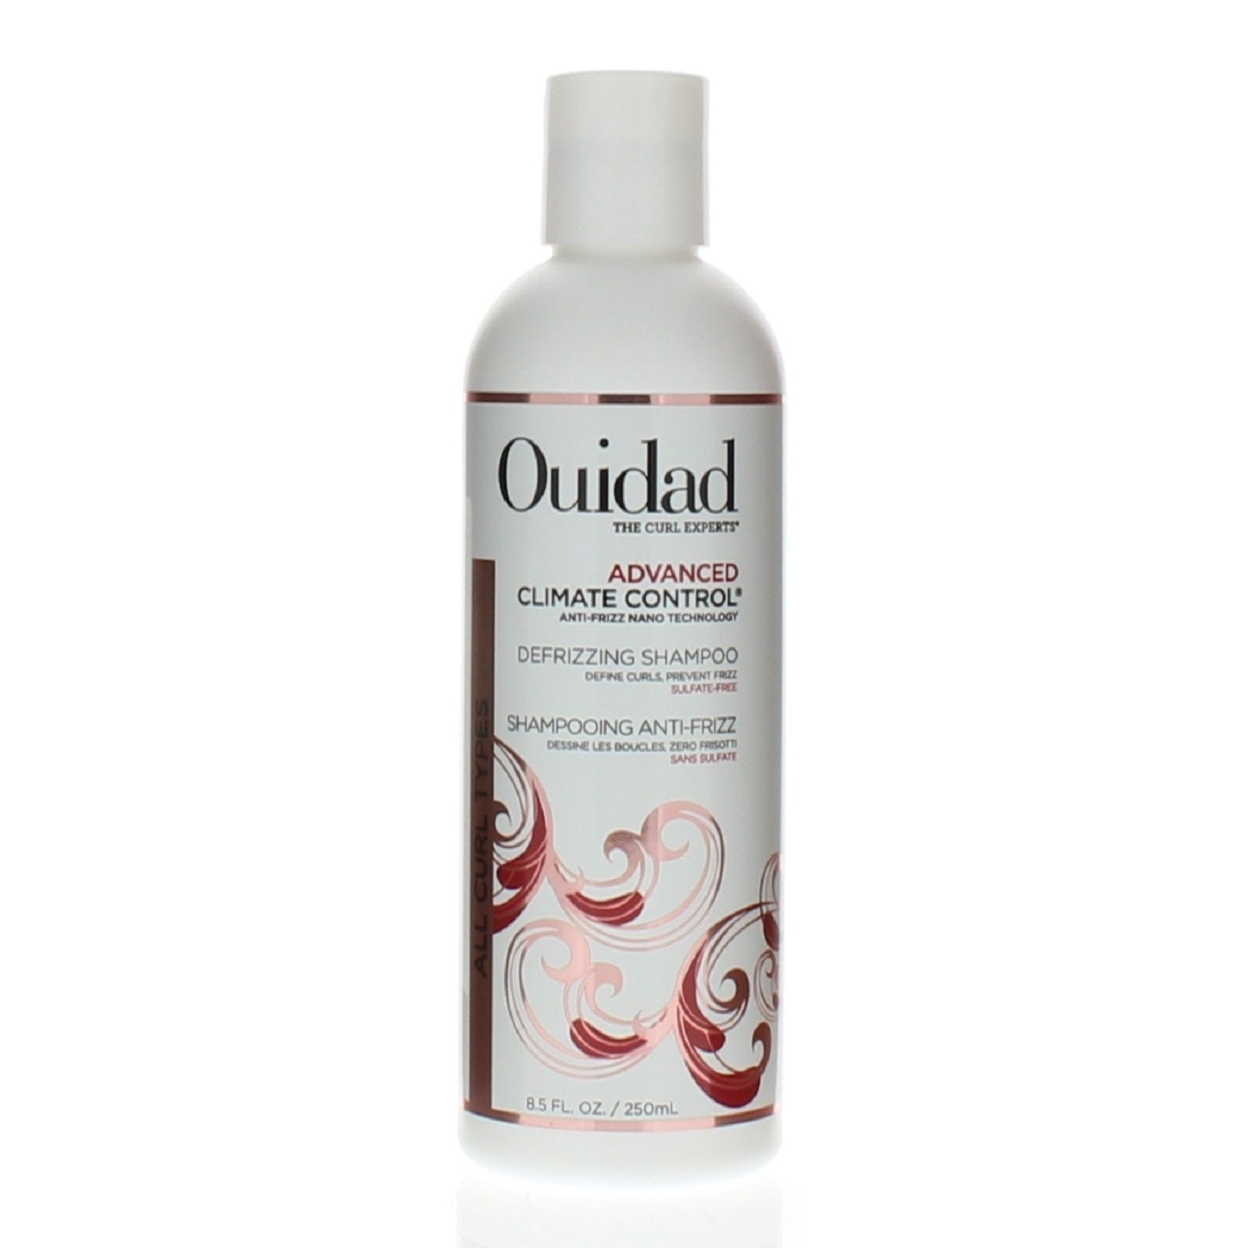 Ouidad Advanced Climate Control Defrizzing Shampoo 8.5oz/250ml